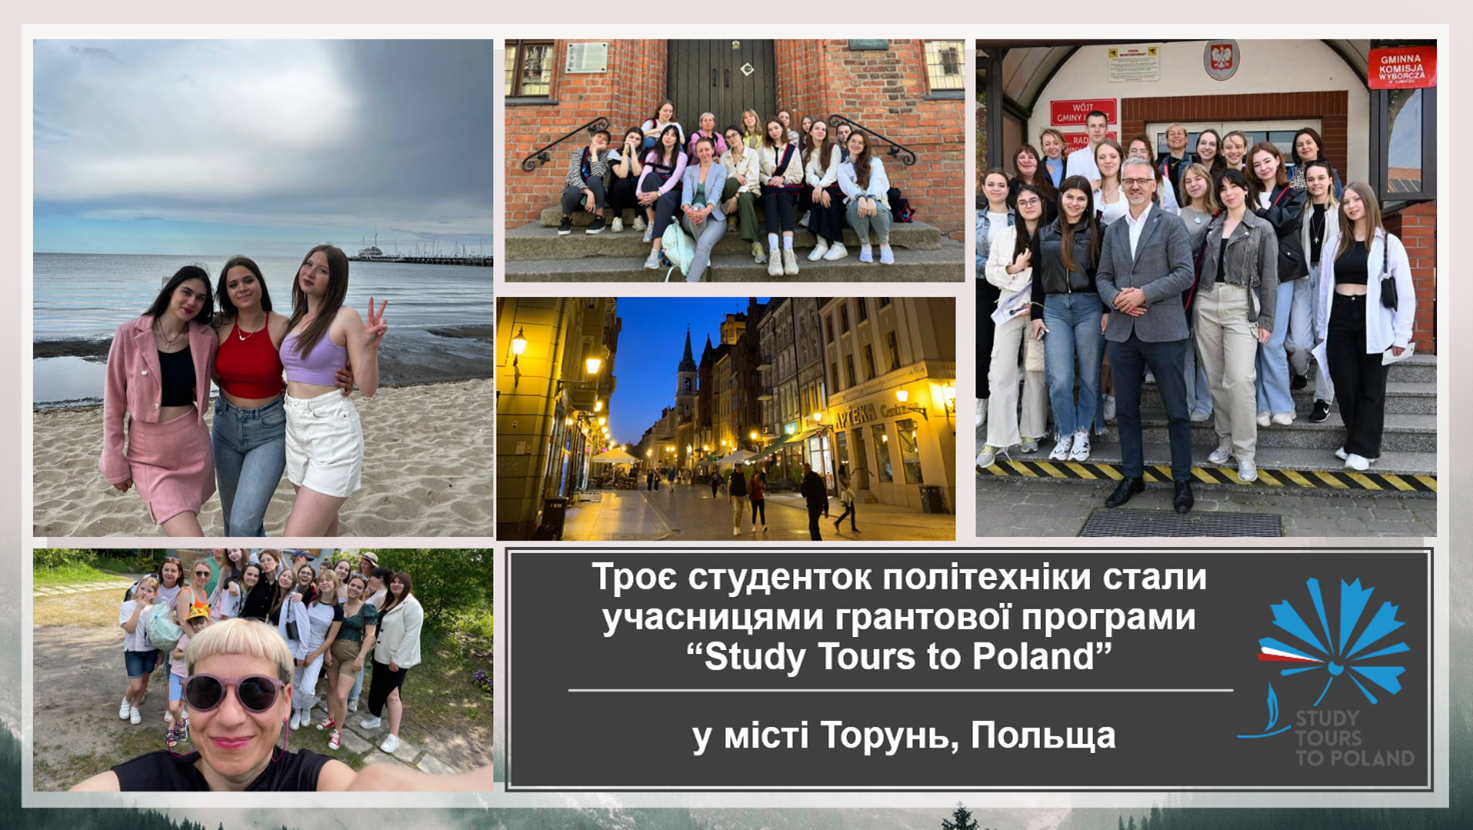 Майбутні  професіонали  опанували інструменти управління різними соціальними сферами у рамках  грантової програми «Study Tours to Poland»  